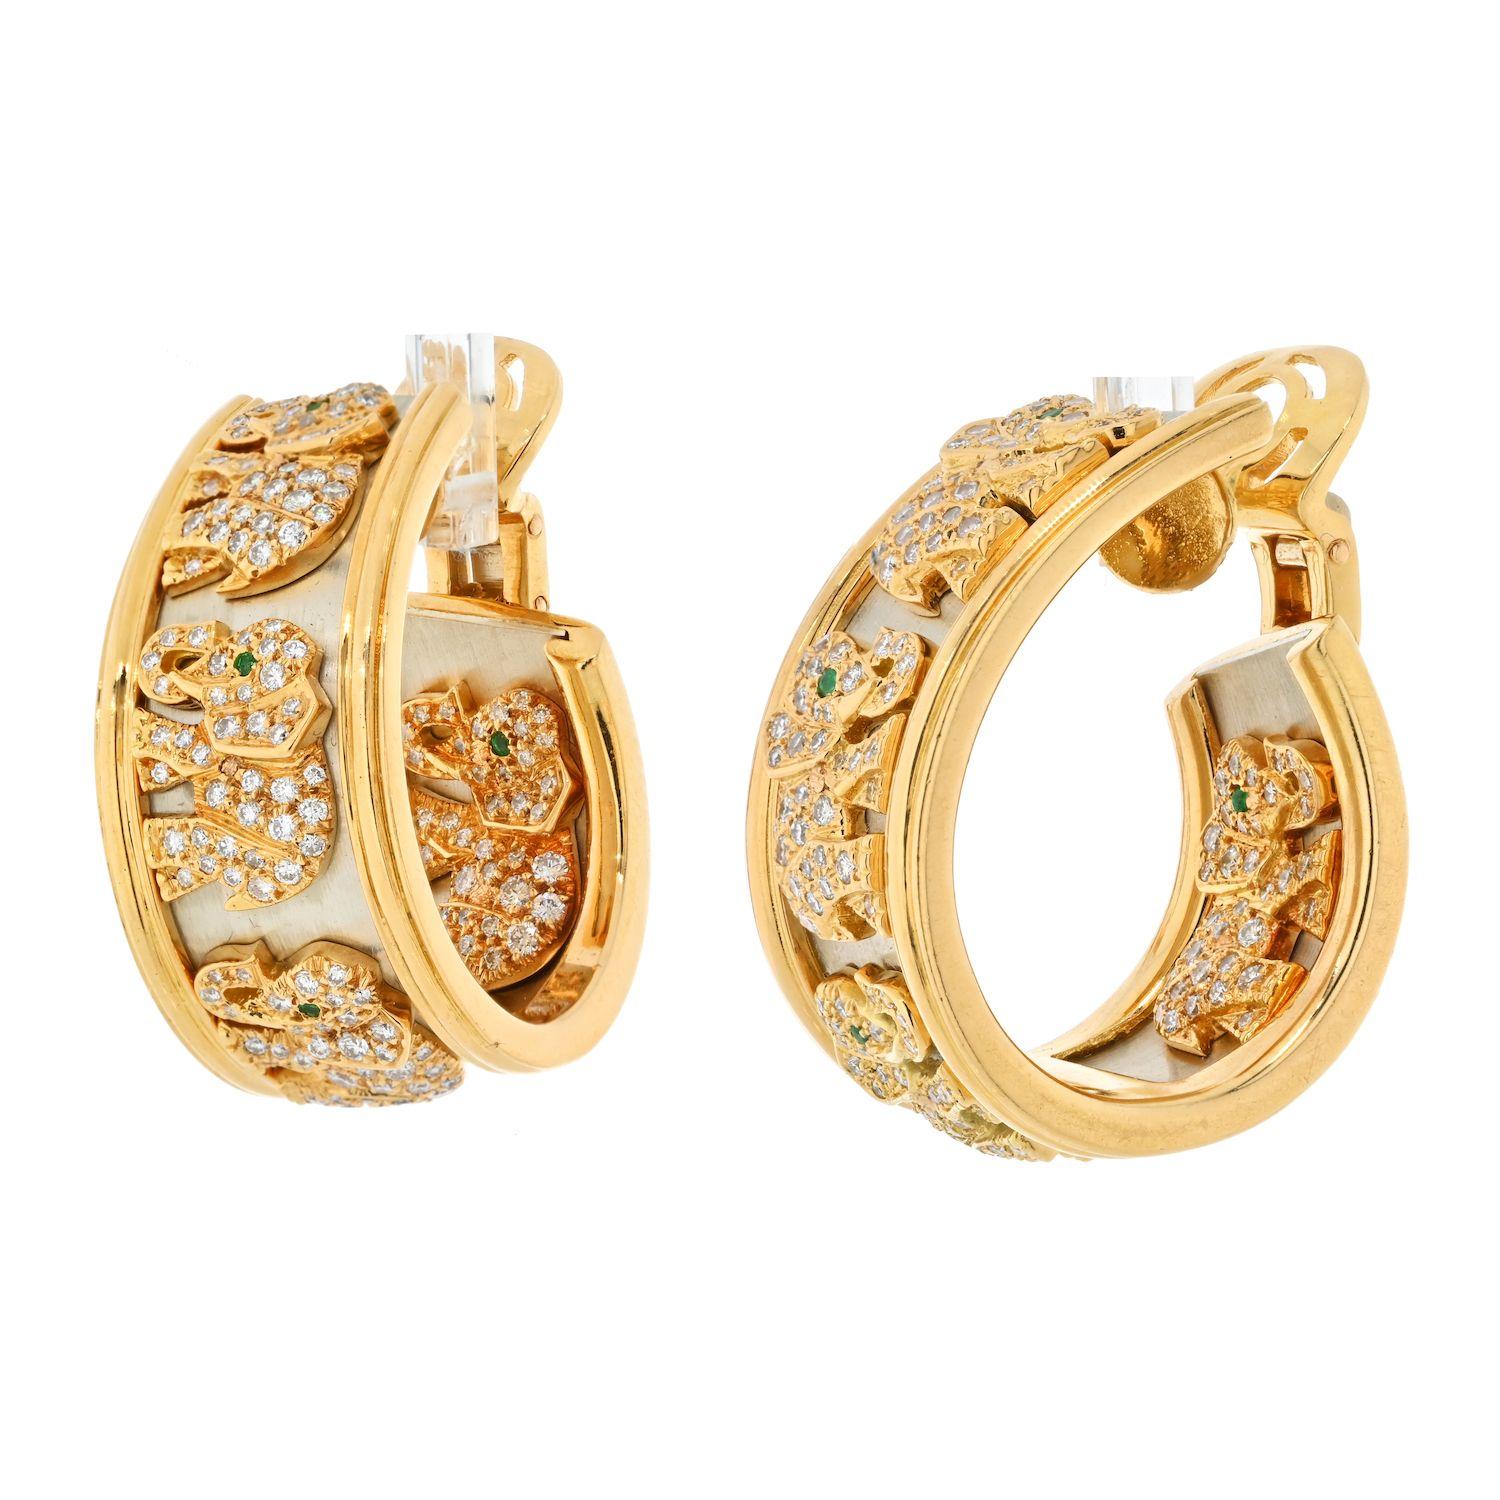 Véritable pièce de collection, chacune de ces boucles d'oreilles Cartier est conçue comme un large anneau orné d'éléphants en diamant, sur fond d'or, dans un cadre en or poli. Cette paire de boucles d'oreilles est une pièce de joaillerie